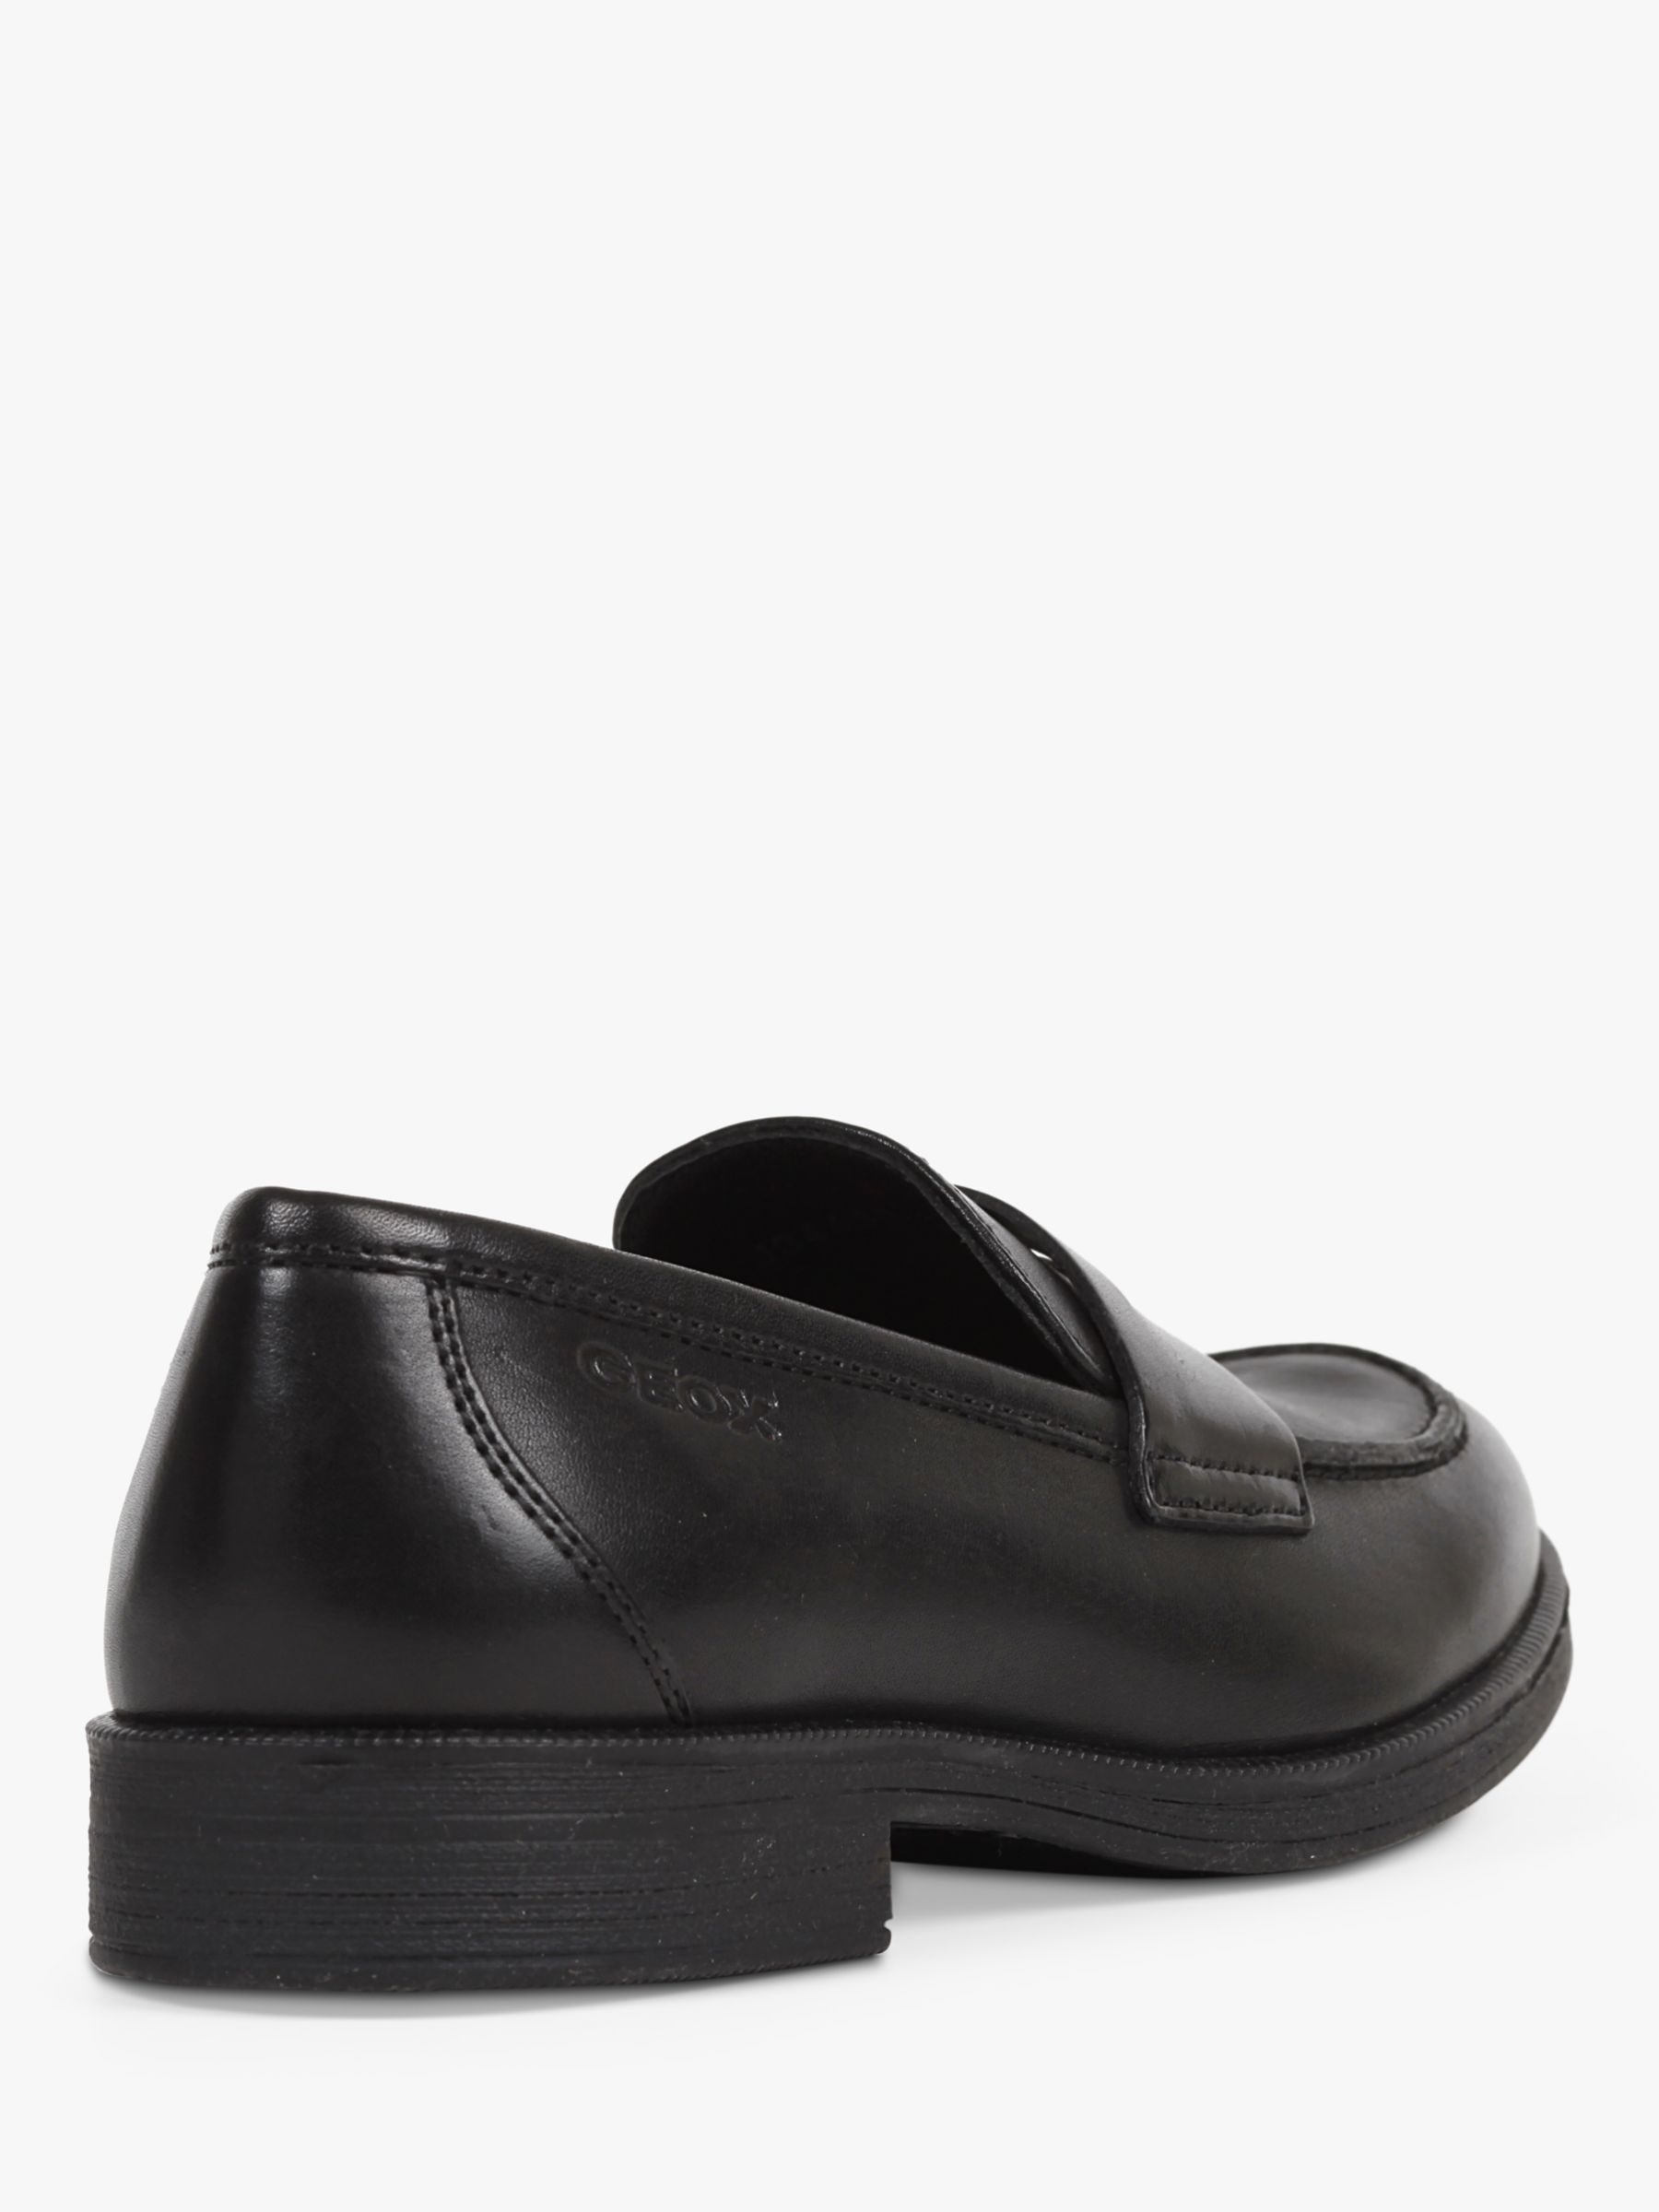 Geox Kids' Agata Slip On Leather Loafers, Black, 37